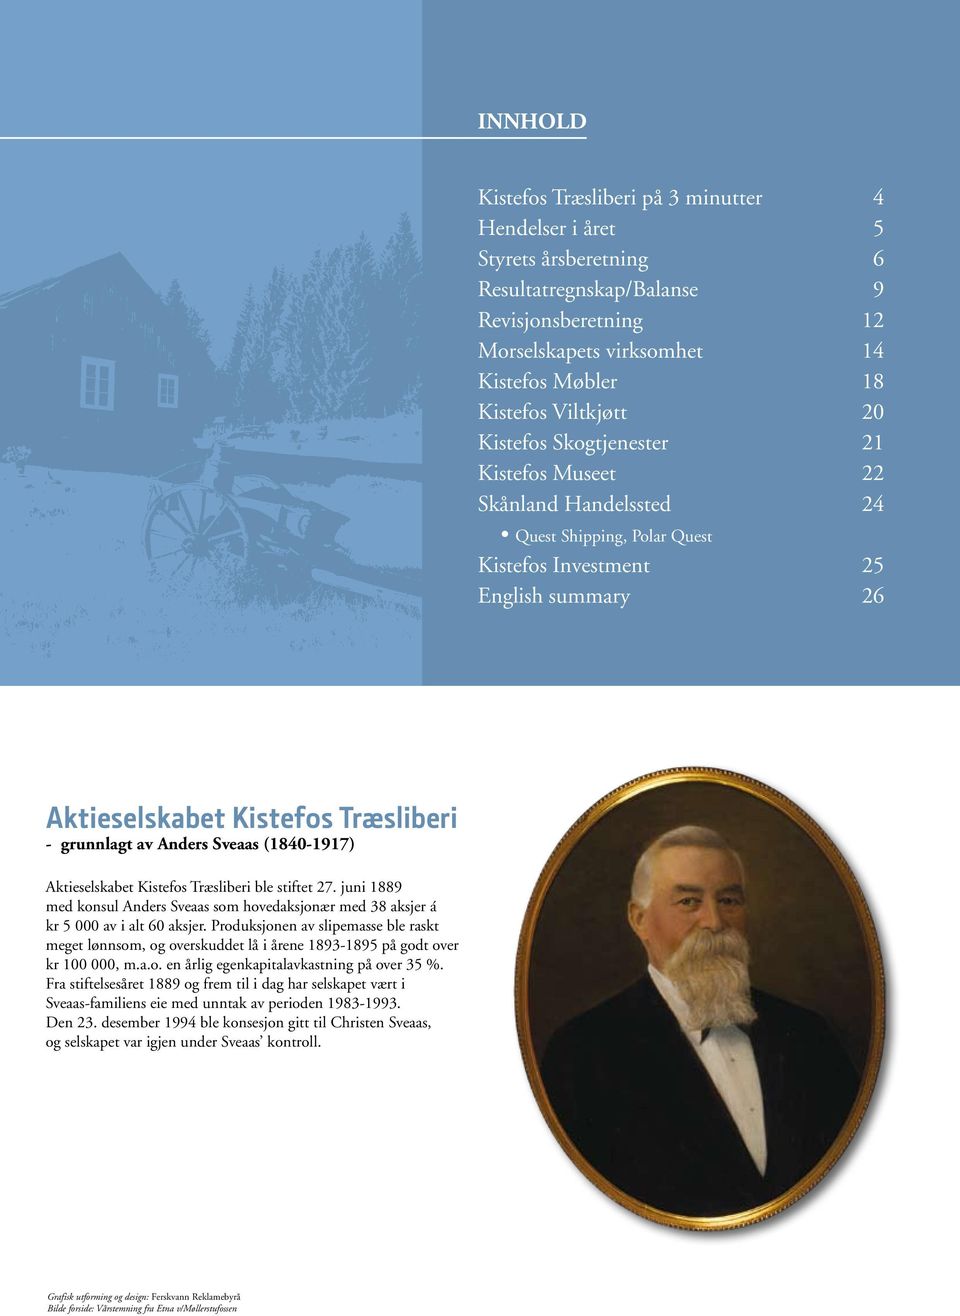 av Anders Sveaas (1840-1917) Aktieselskabet Kistefos Træsliberi ble stiftet 27. juni 1889 med konsul Anders Sveaas som hovedaksjonær med 38 aksjer á kr 5 000 av i alt 60 aksjer.